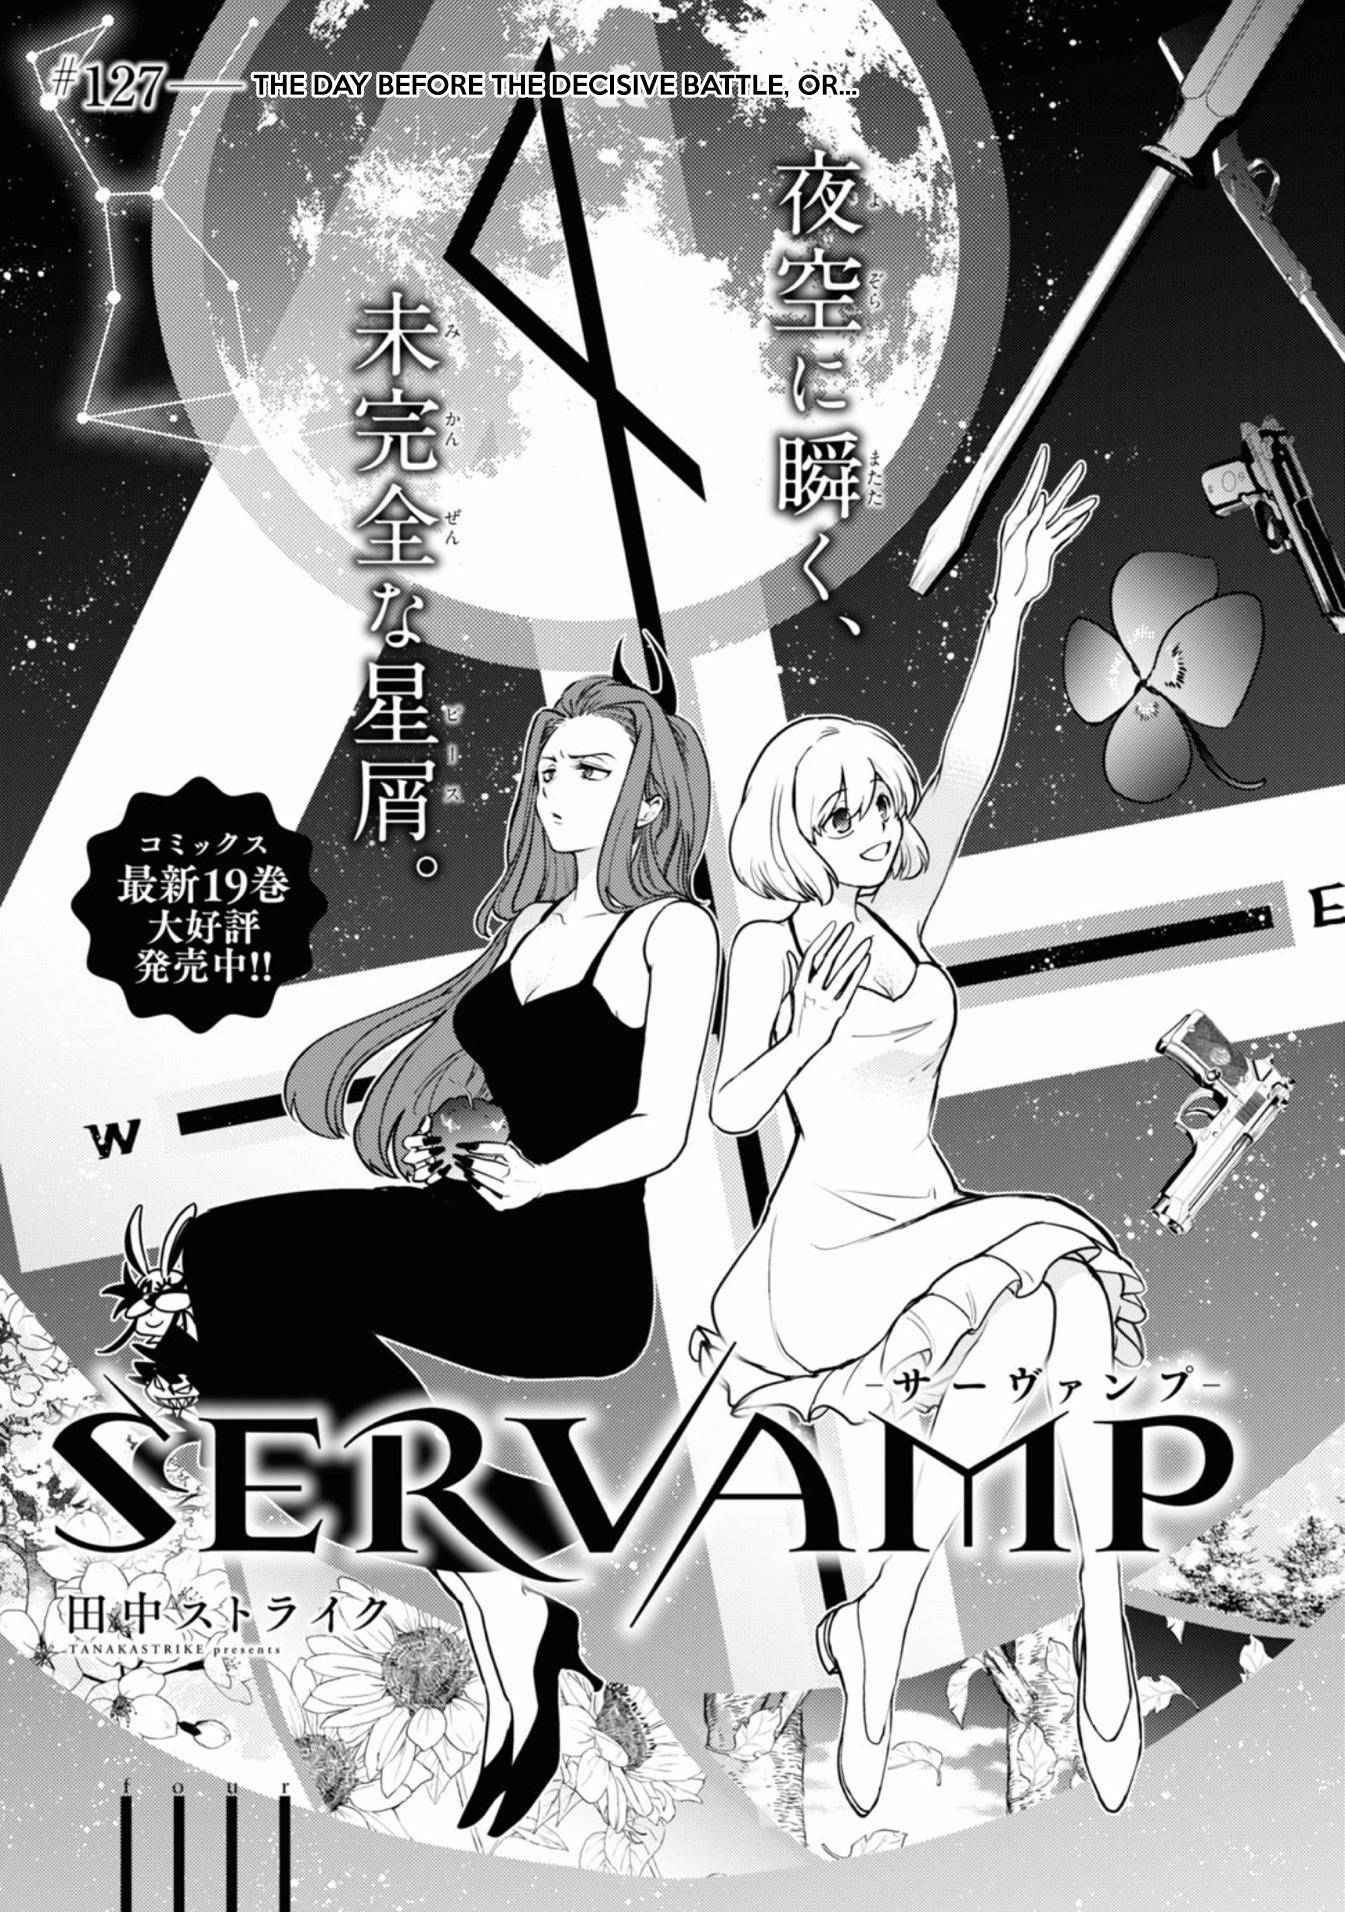 Servamp - chapter 127 - #1